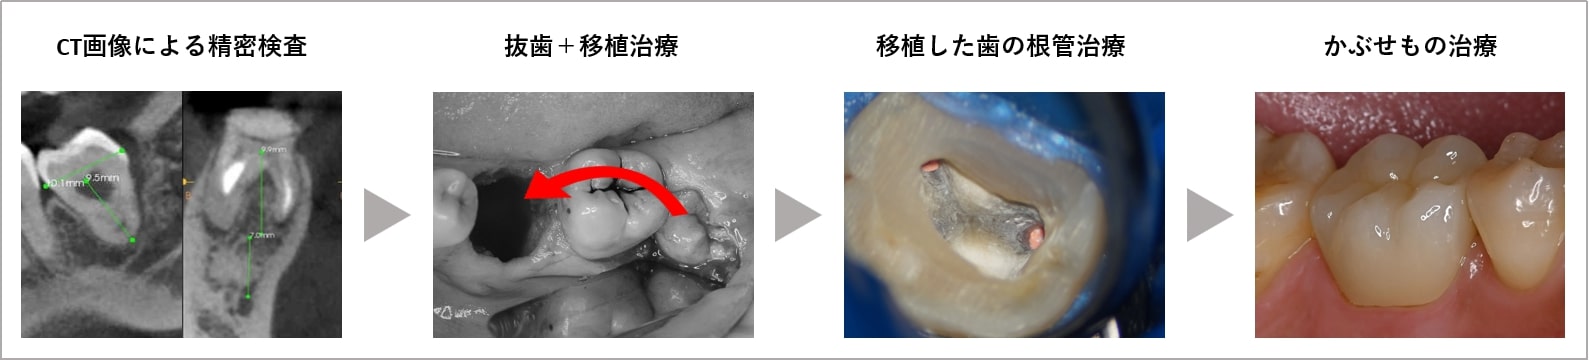 歯の移植治療の流れ